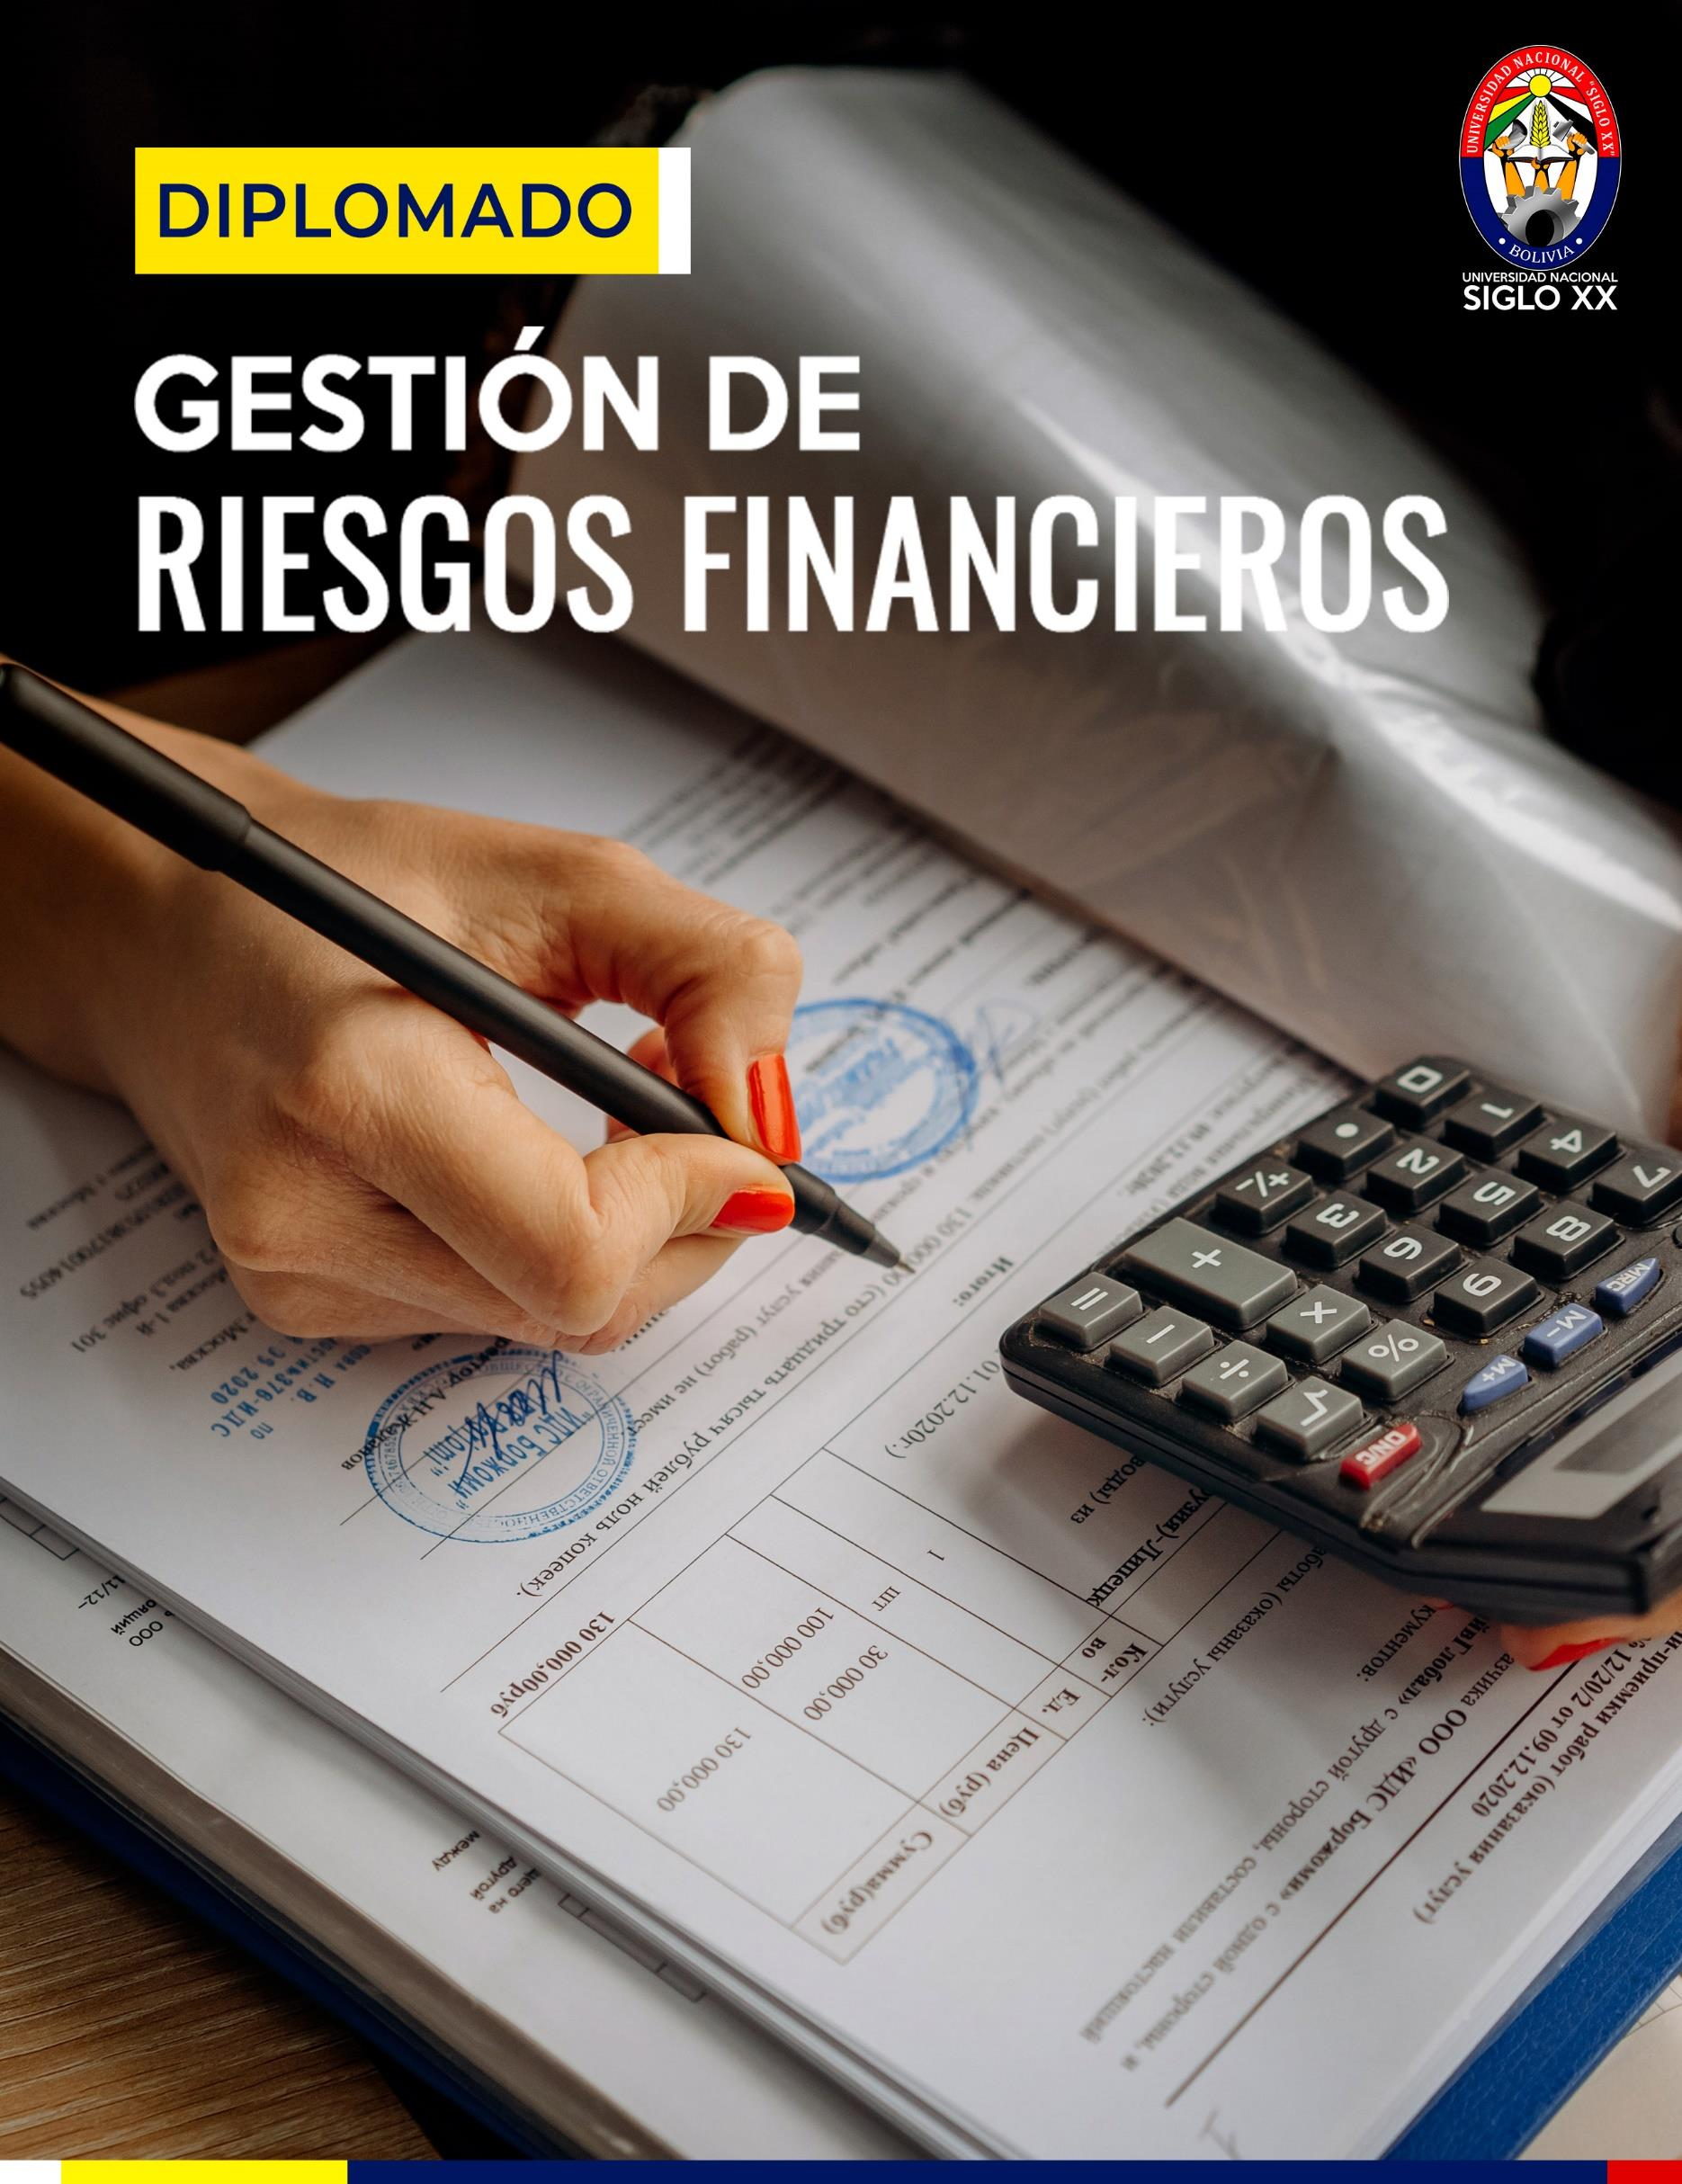 Diplomado GESTIÓN DE RIESGOS FINANCIEROS